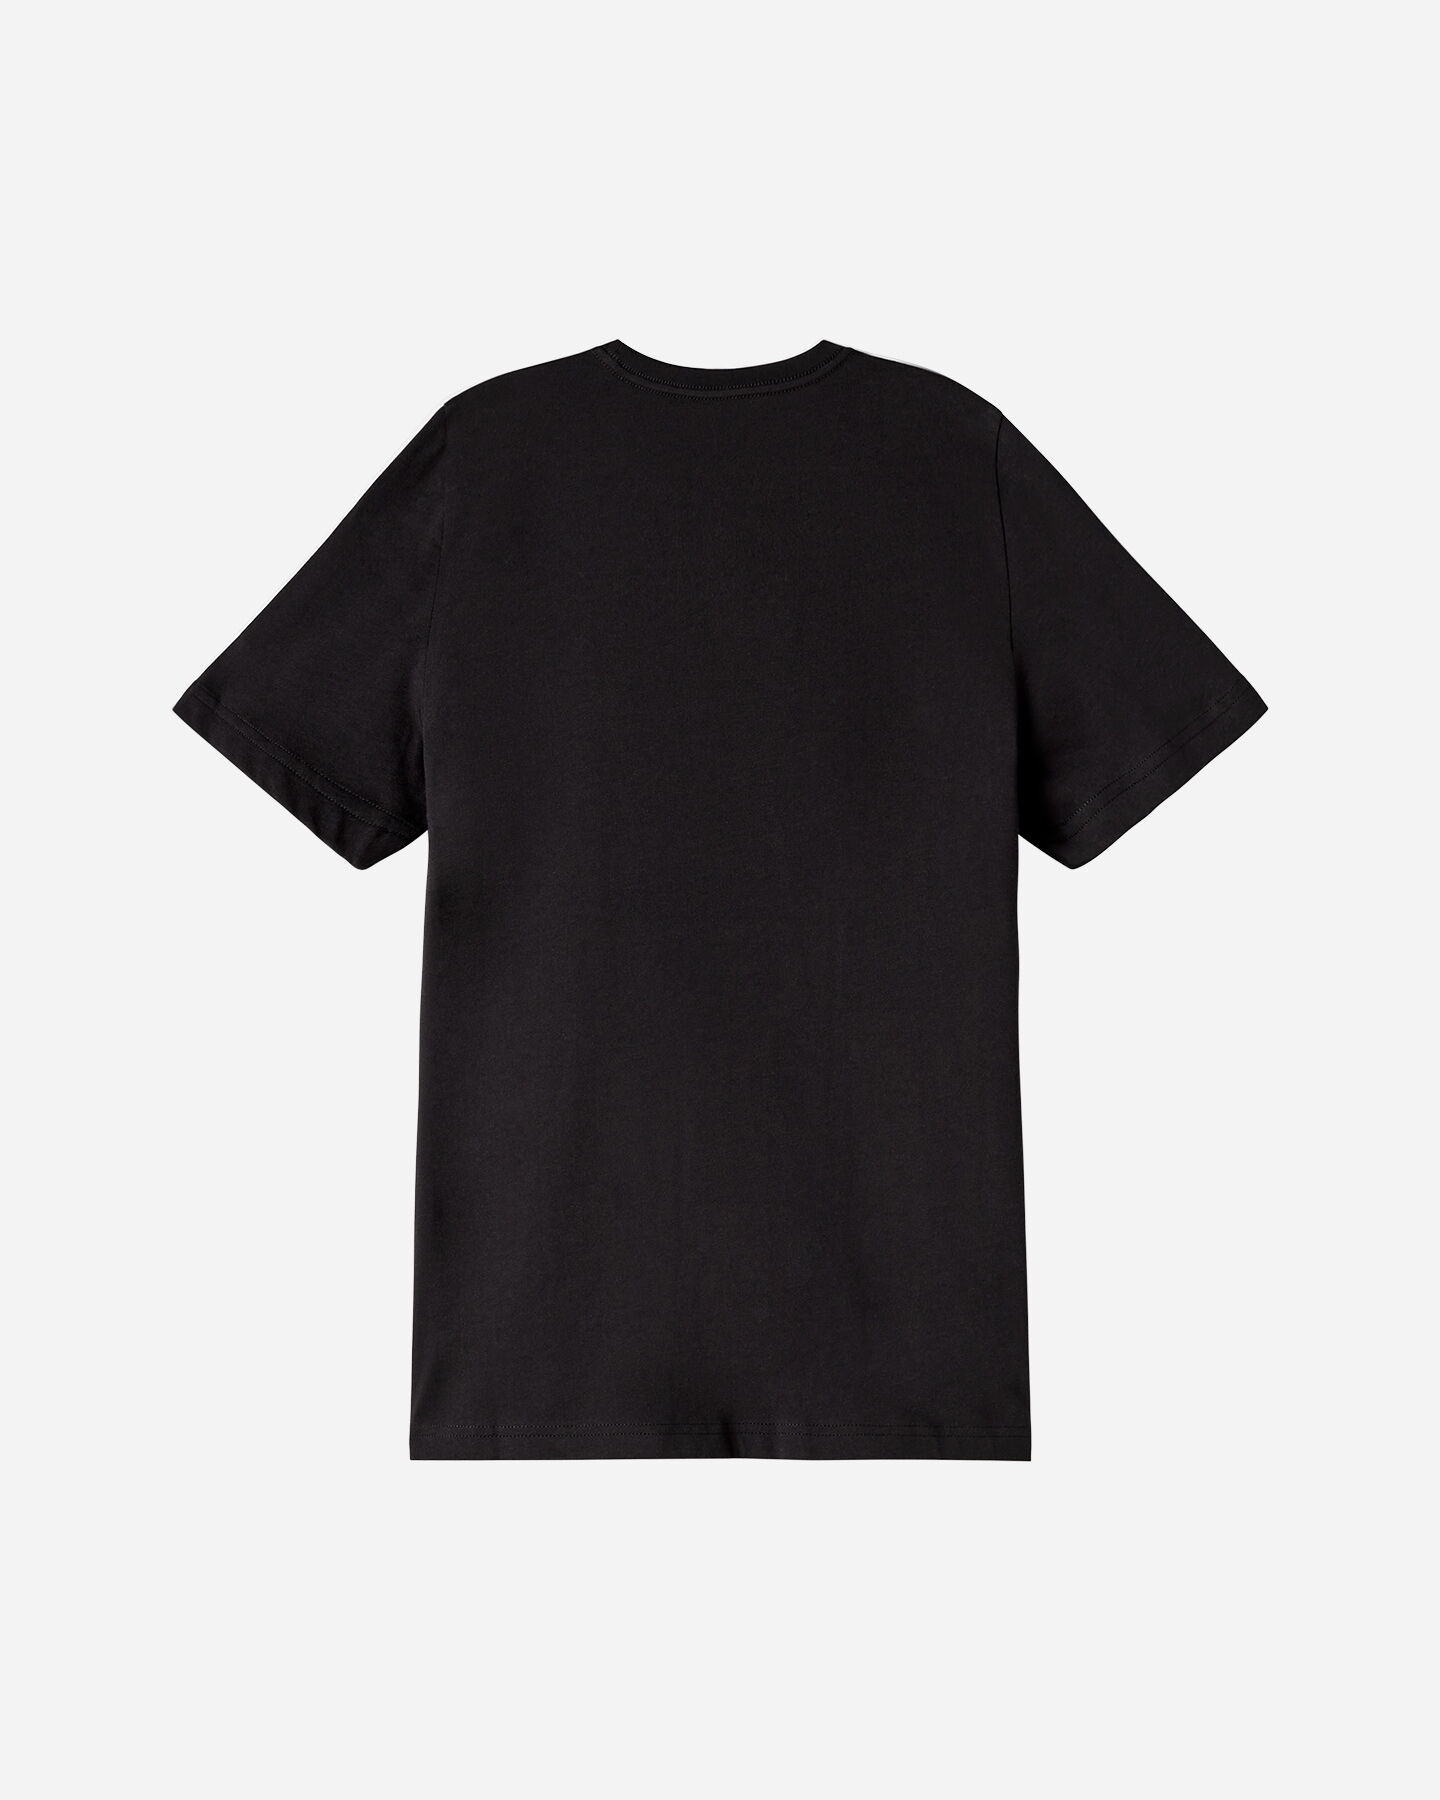  T-Shirt PUMA ESSENTIAL+ LOGO JR S5606791|10|104 scatto 1